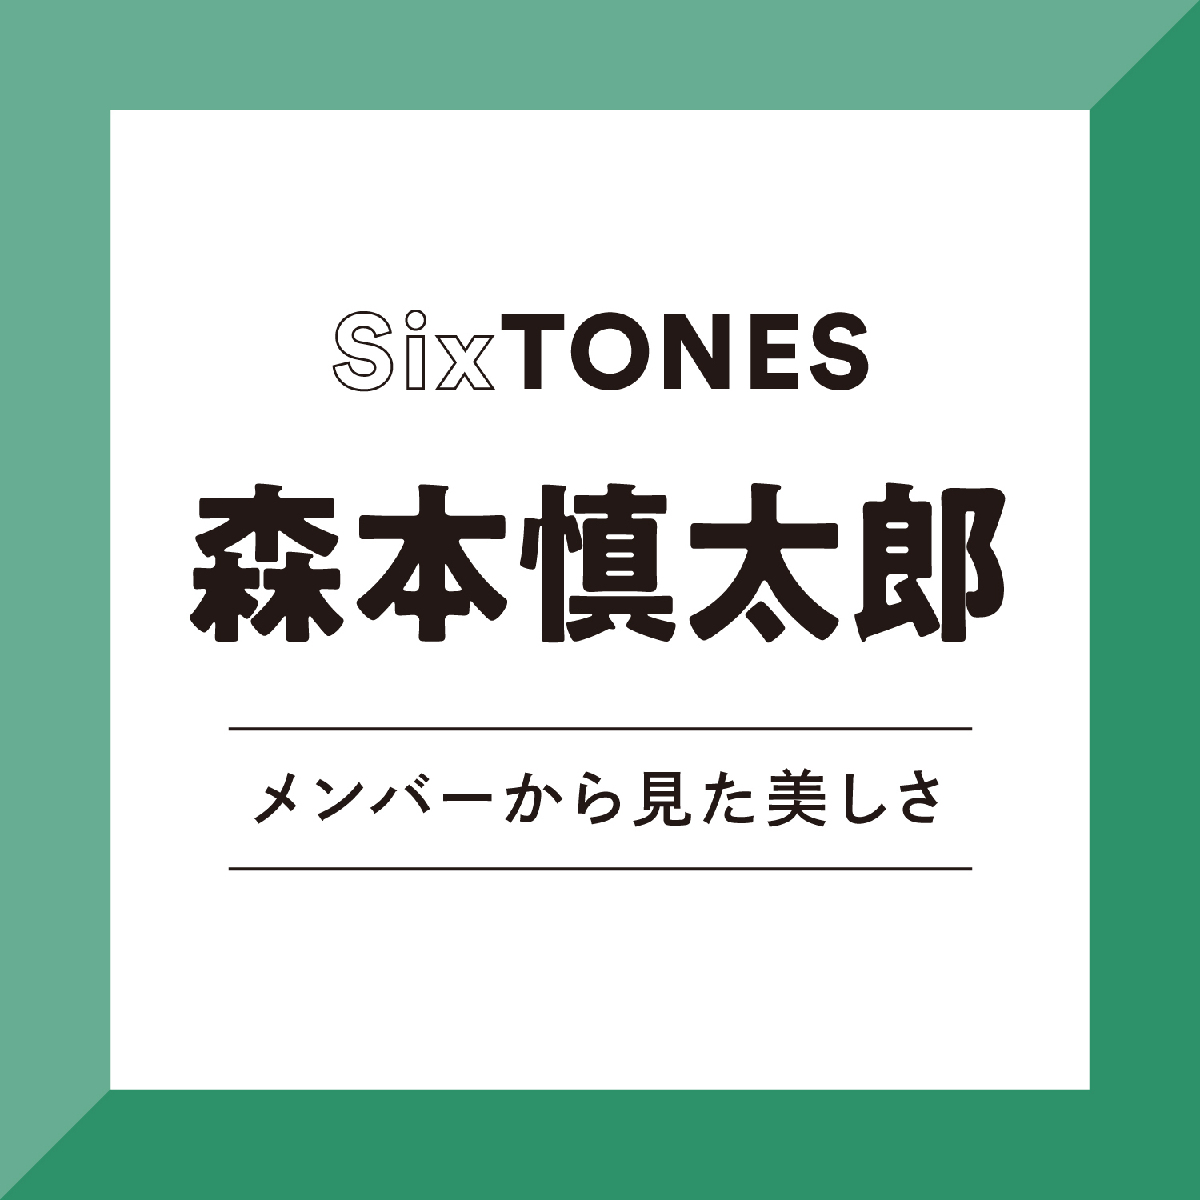 【SixTONES】田中樹から見た、森本慎太郎は「本心や本音を直接ぶつける勇気がある人。彼と向きあう時間はとても心地よい」